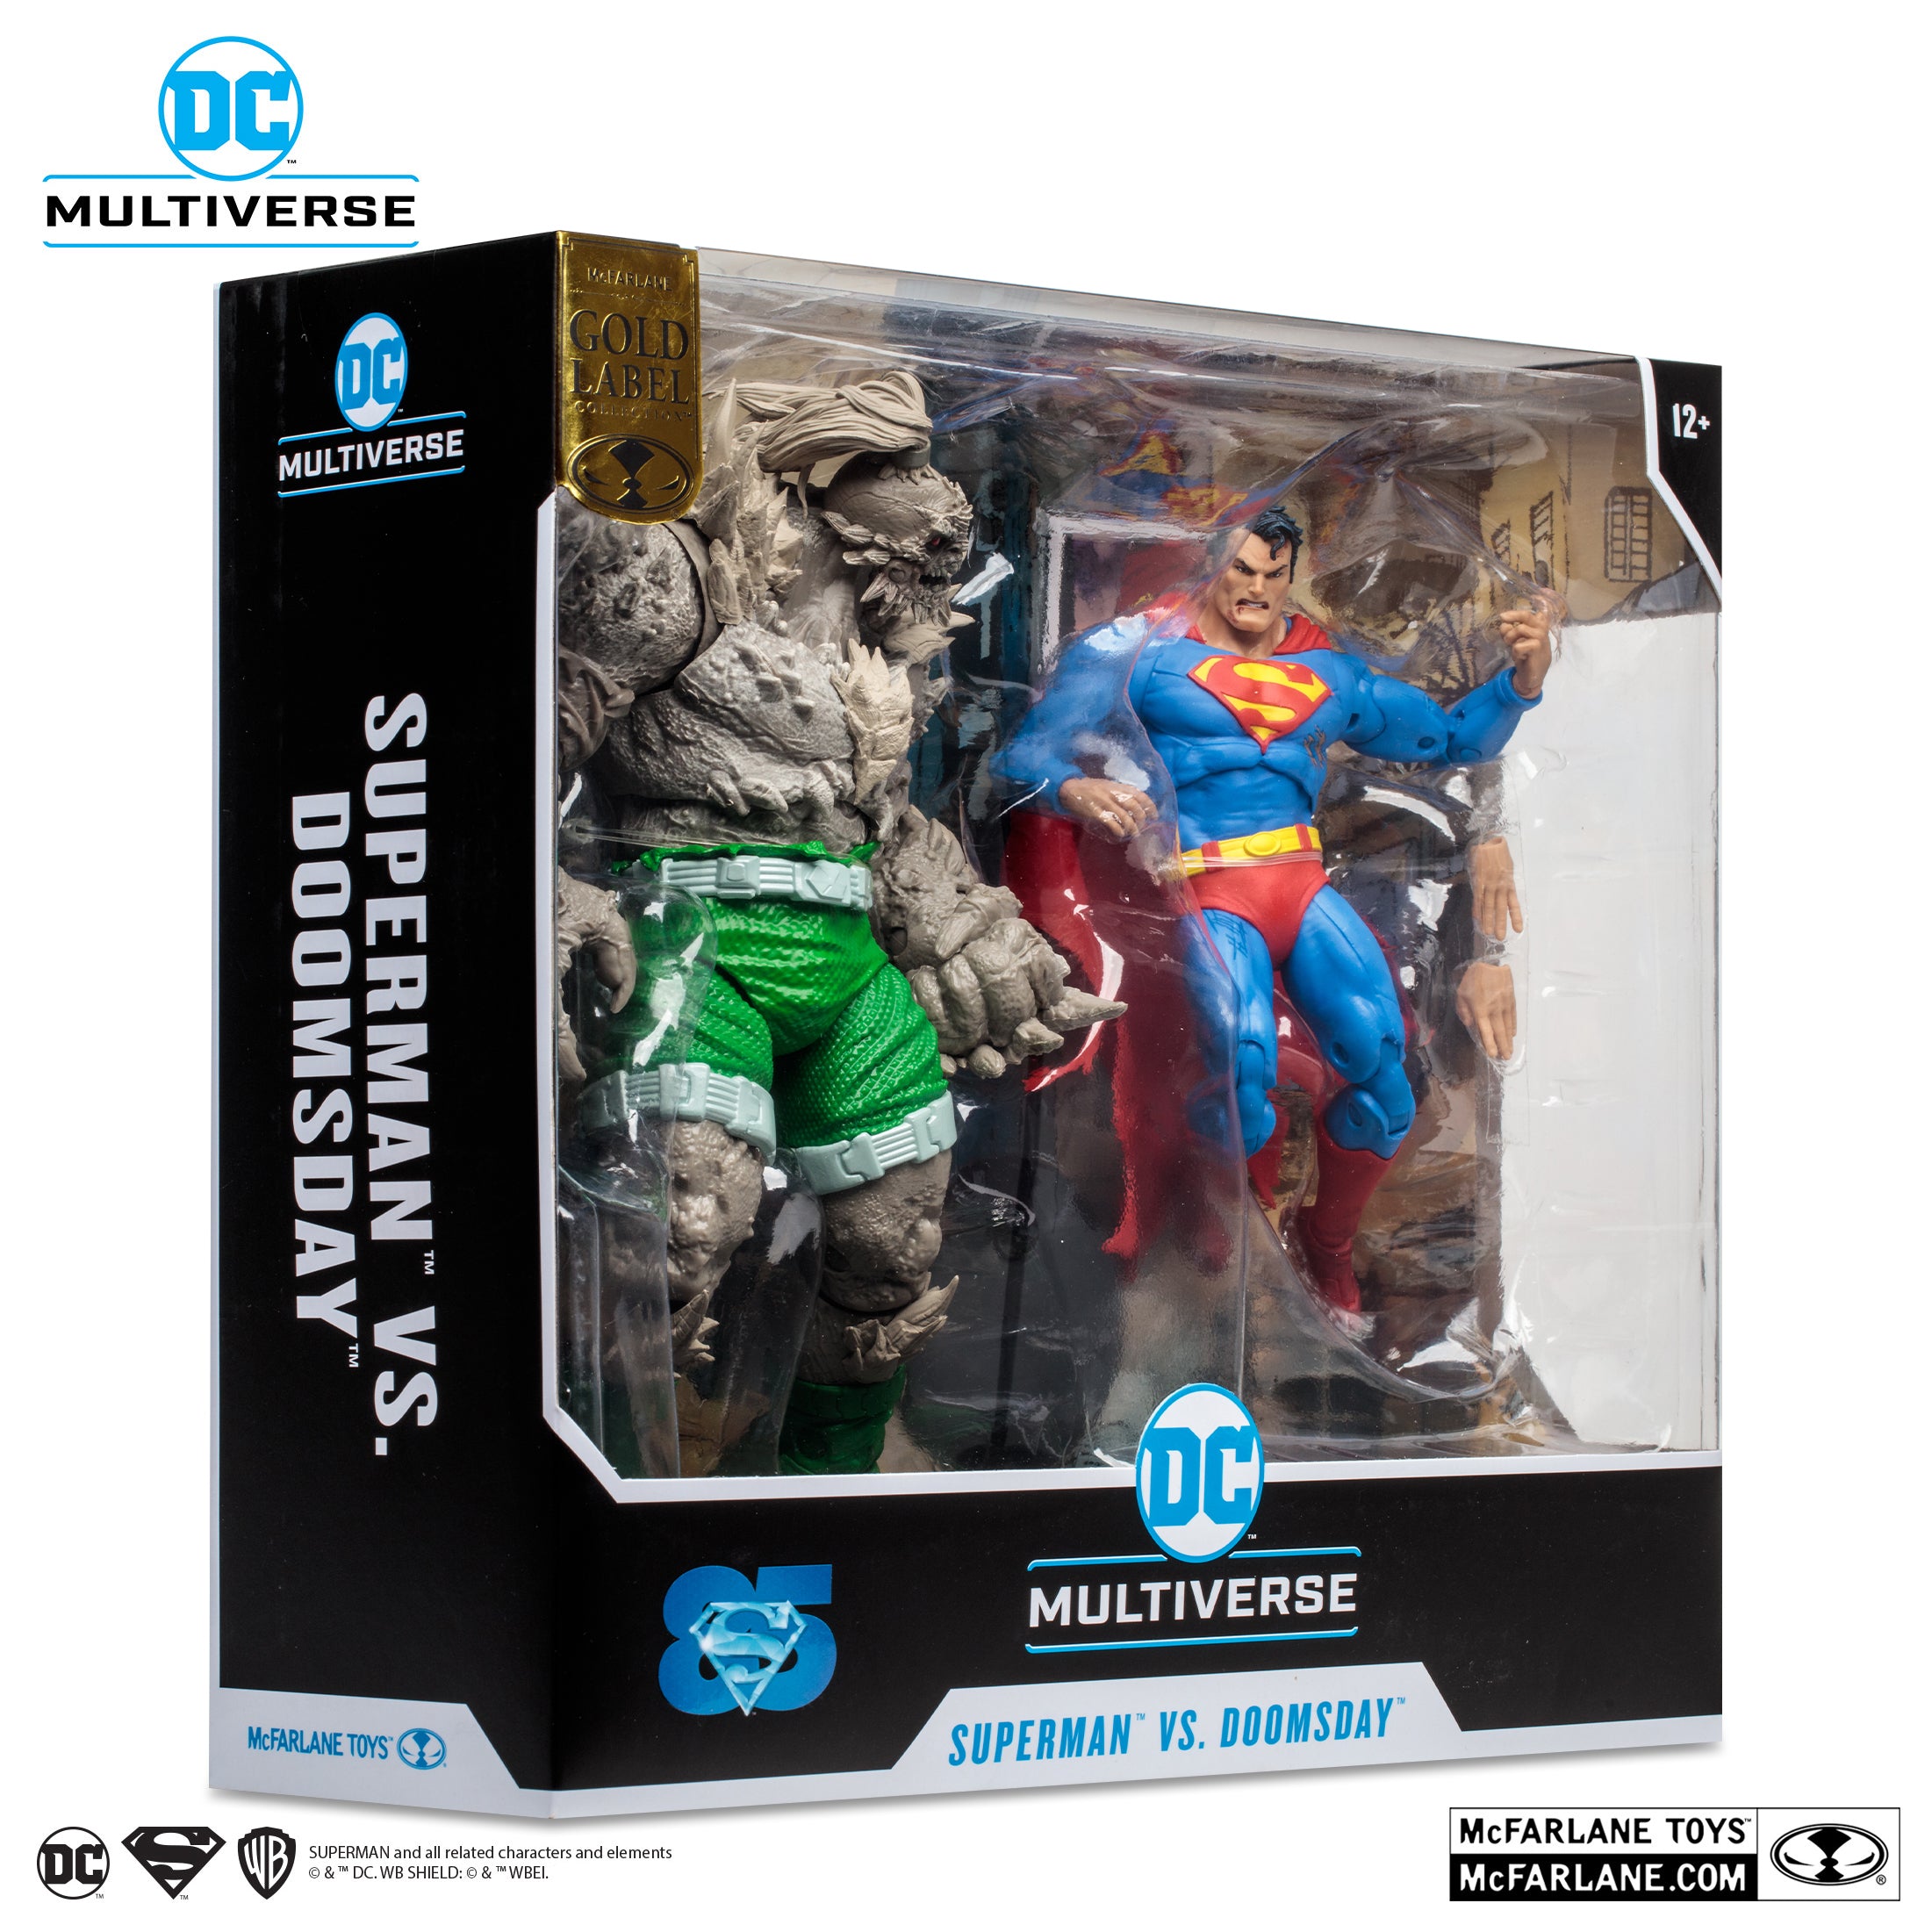 DC Comics Gold Label Collection Superman vs Doomsday Action Figure Set